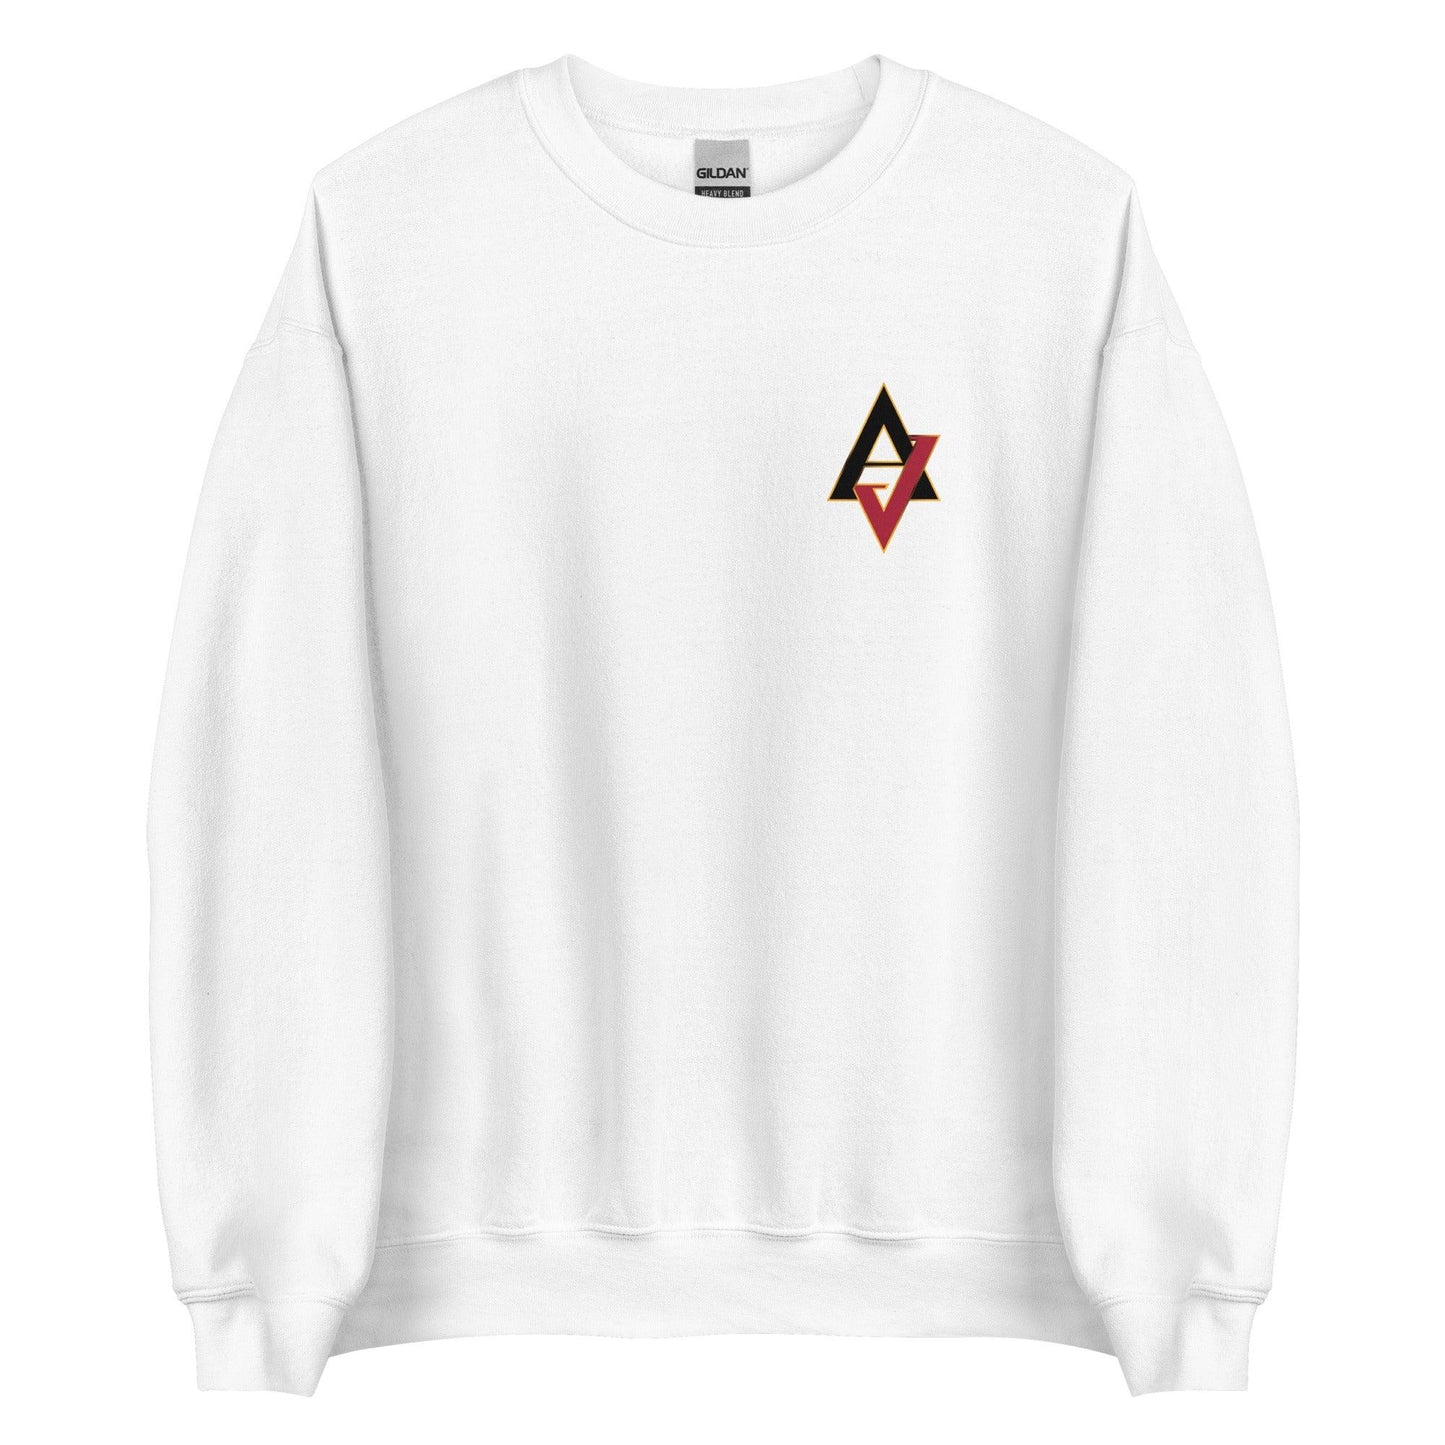 AJ Vukovich “AV” Sweatshirt - Fan Arch